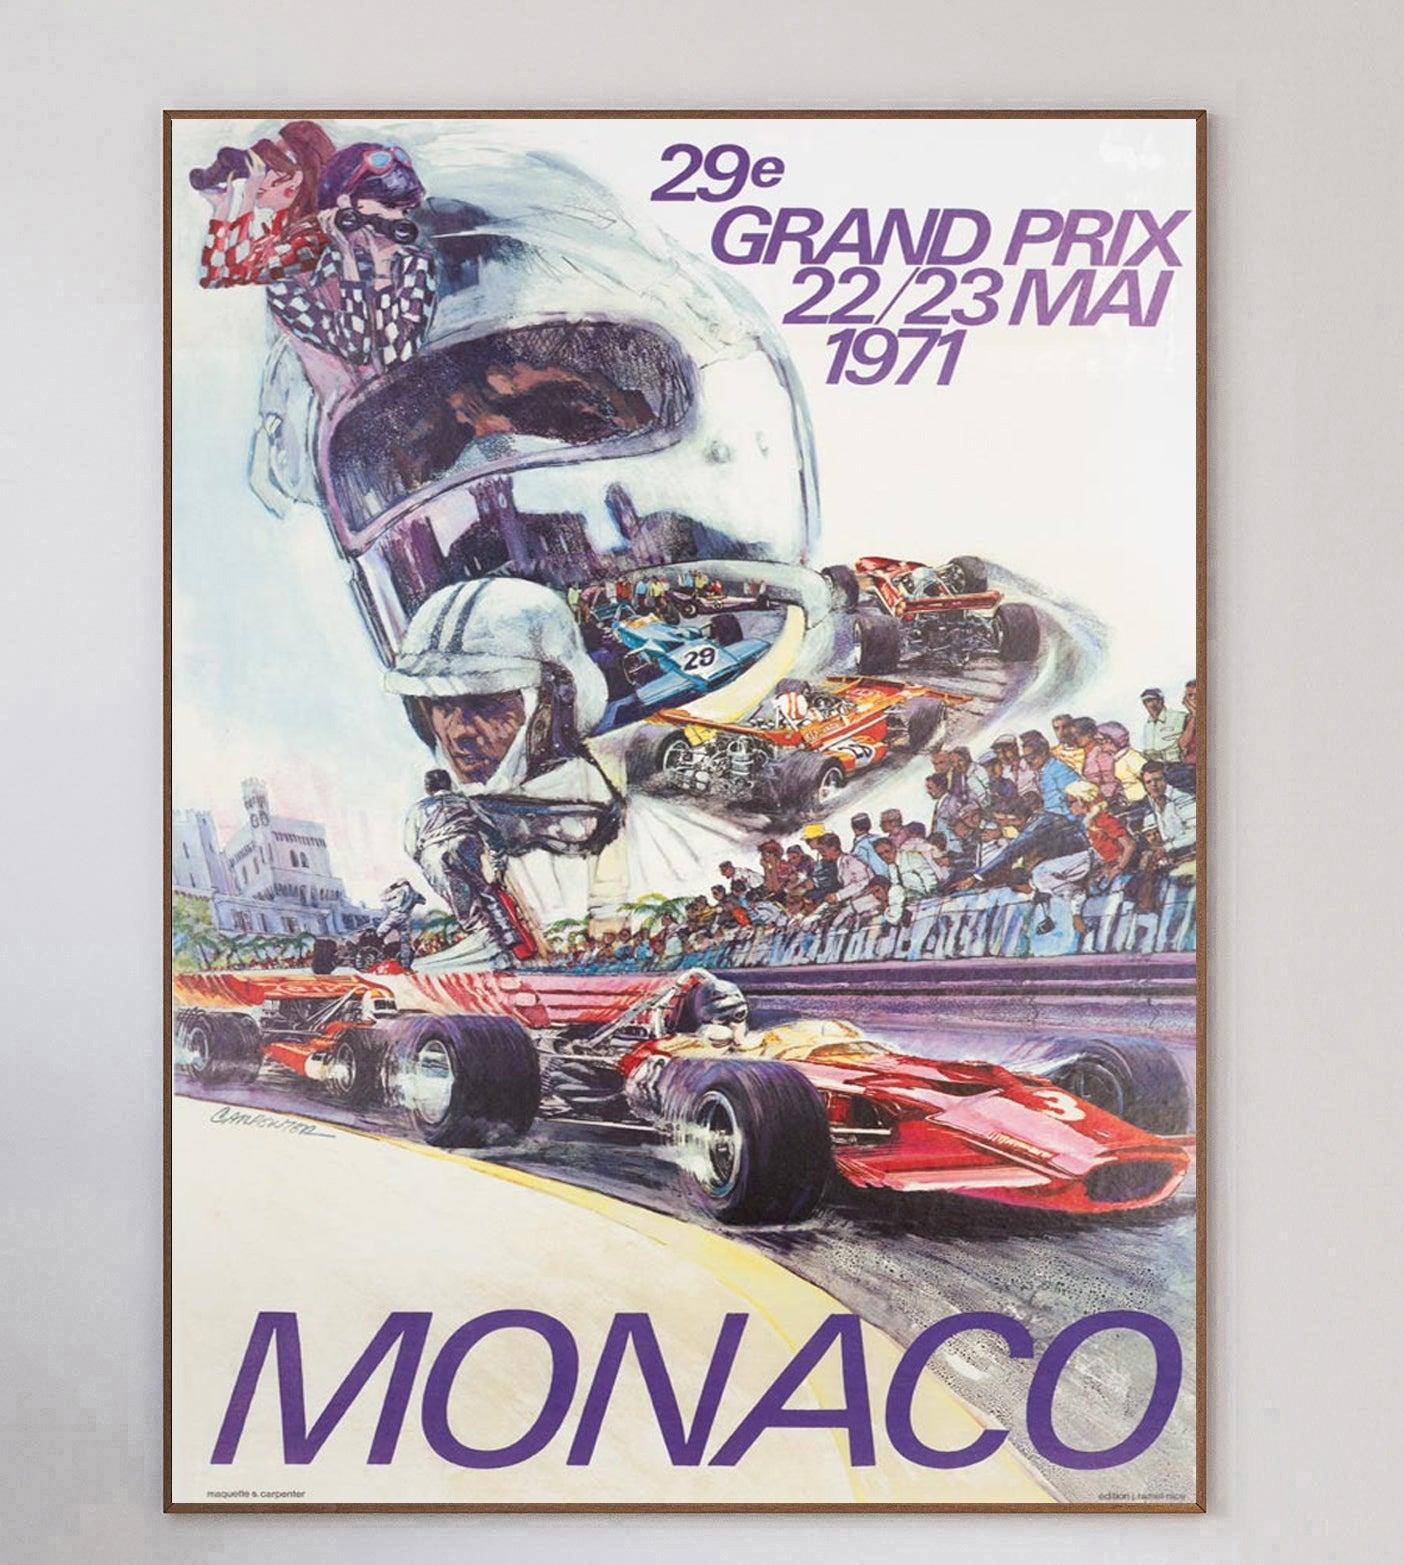 Este cartel es para el Gran Premio de Mónaco de 1971, con el brillante diseño de la ilustración de Carpenter que representa al ganador del año anterior, Jochen Rindt, pilotando para Lotus-Ford.

El maravilloso póster muestra a los coches corriendo